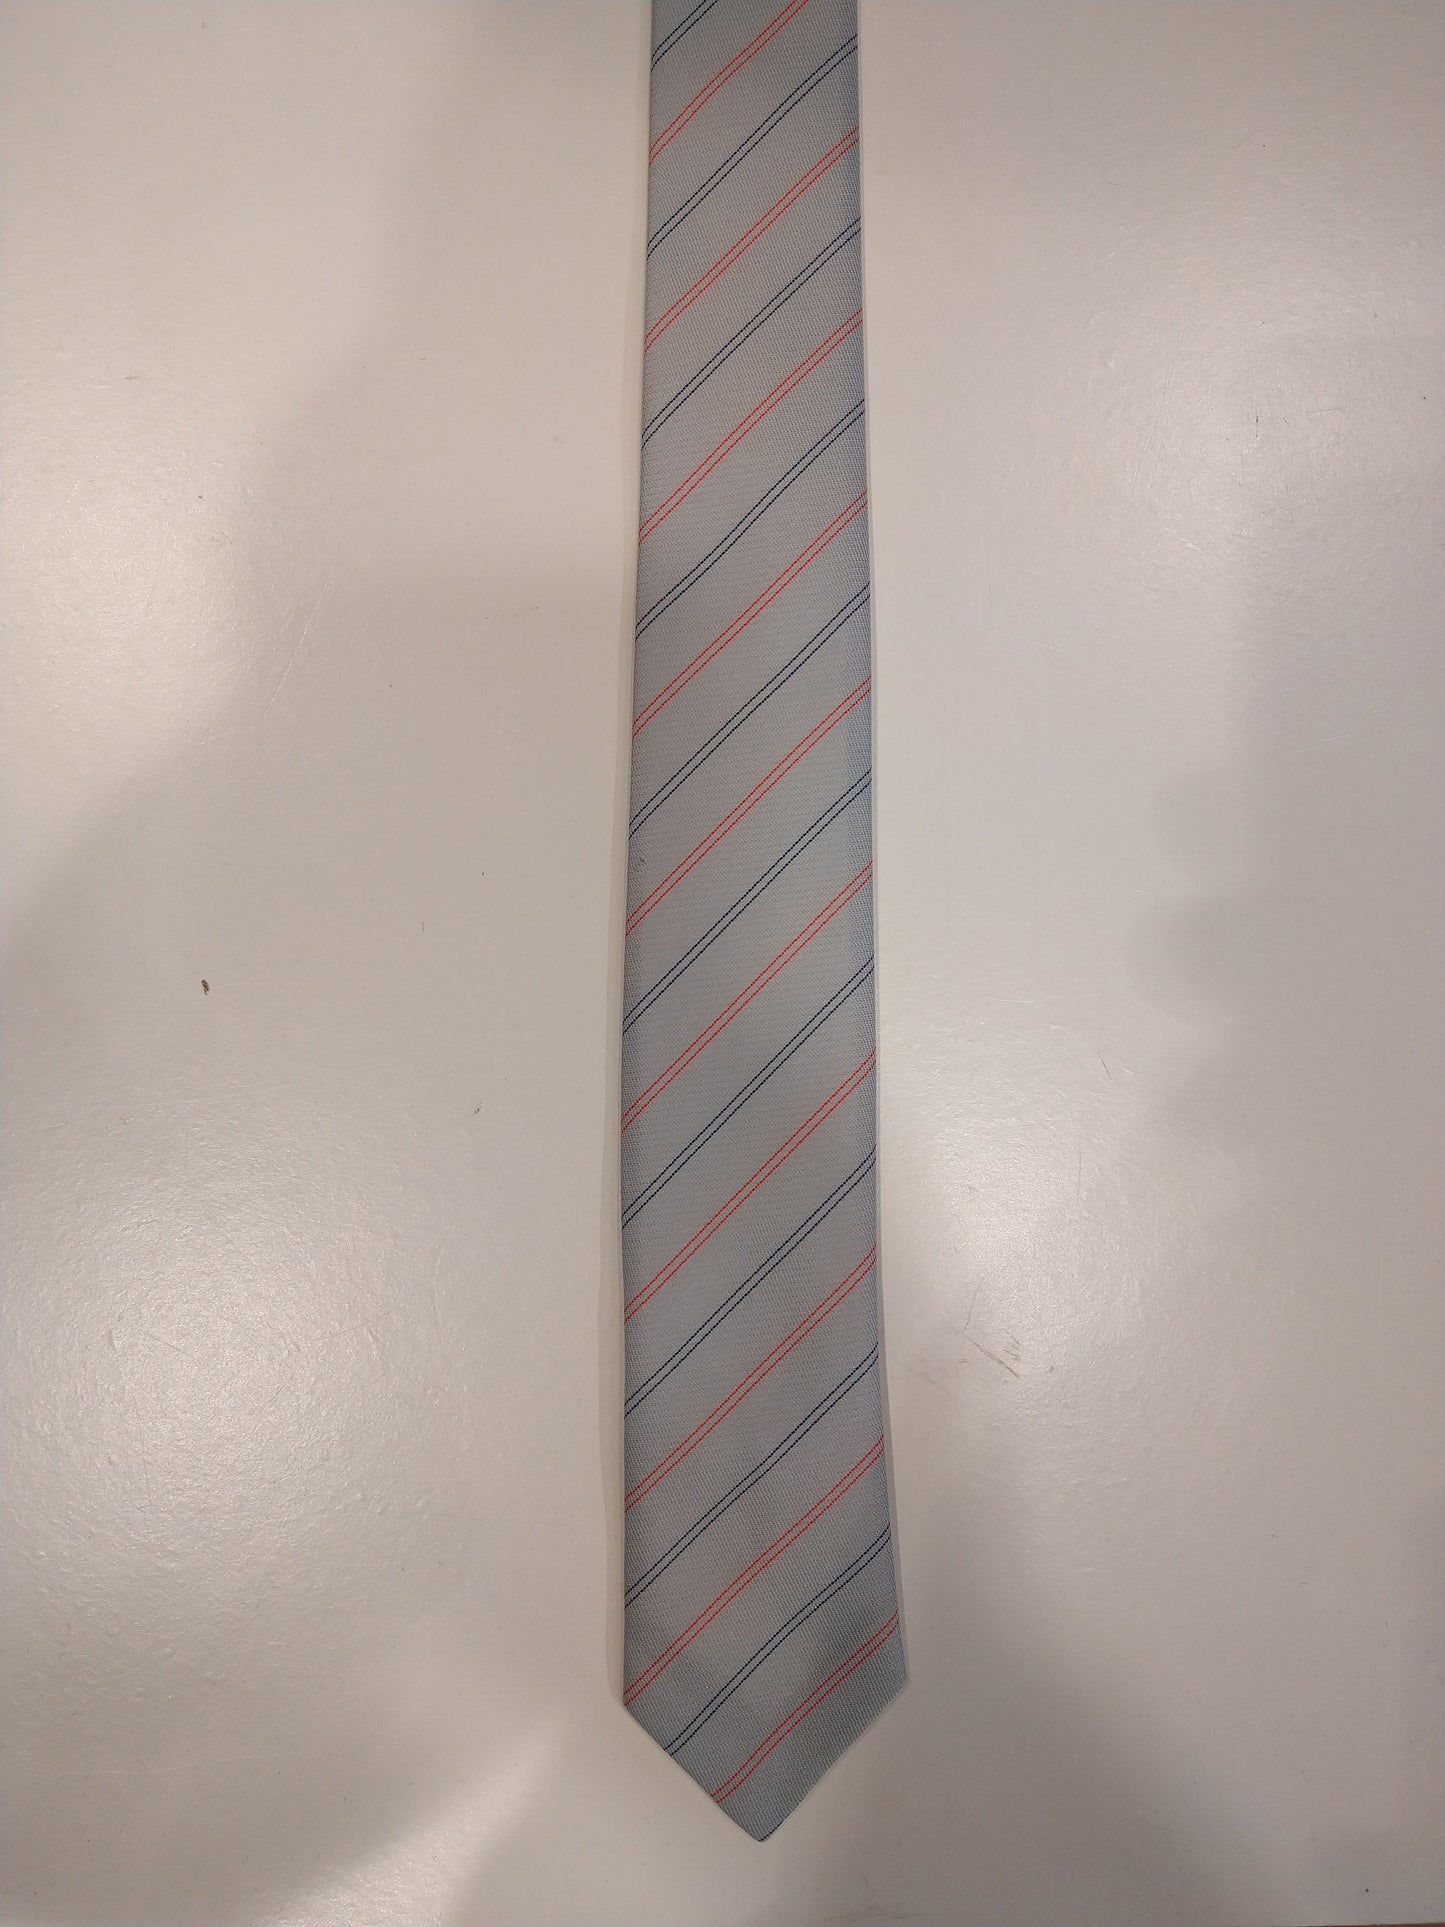 Cravate de mode vintage à cravate extra étroite. Rouge rouge gris rayé.